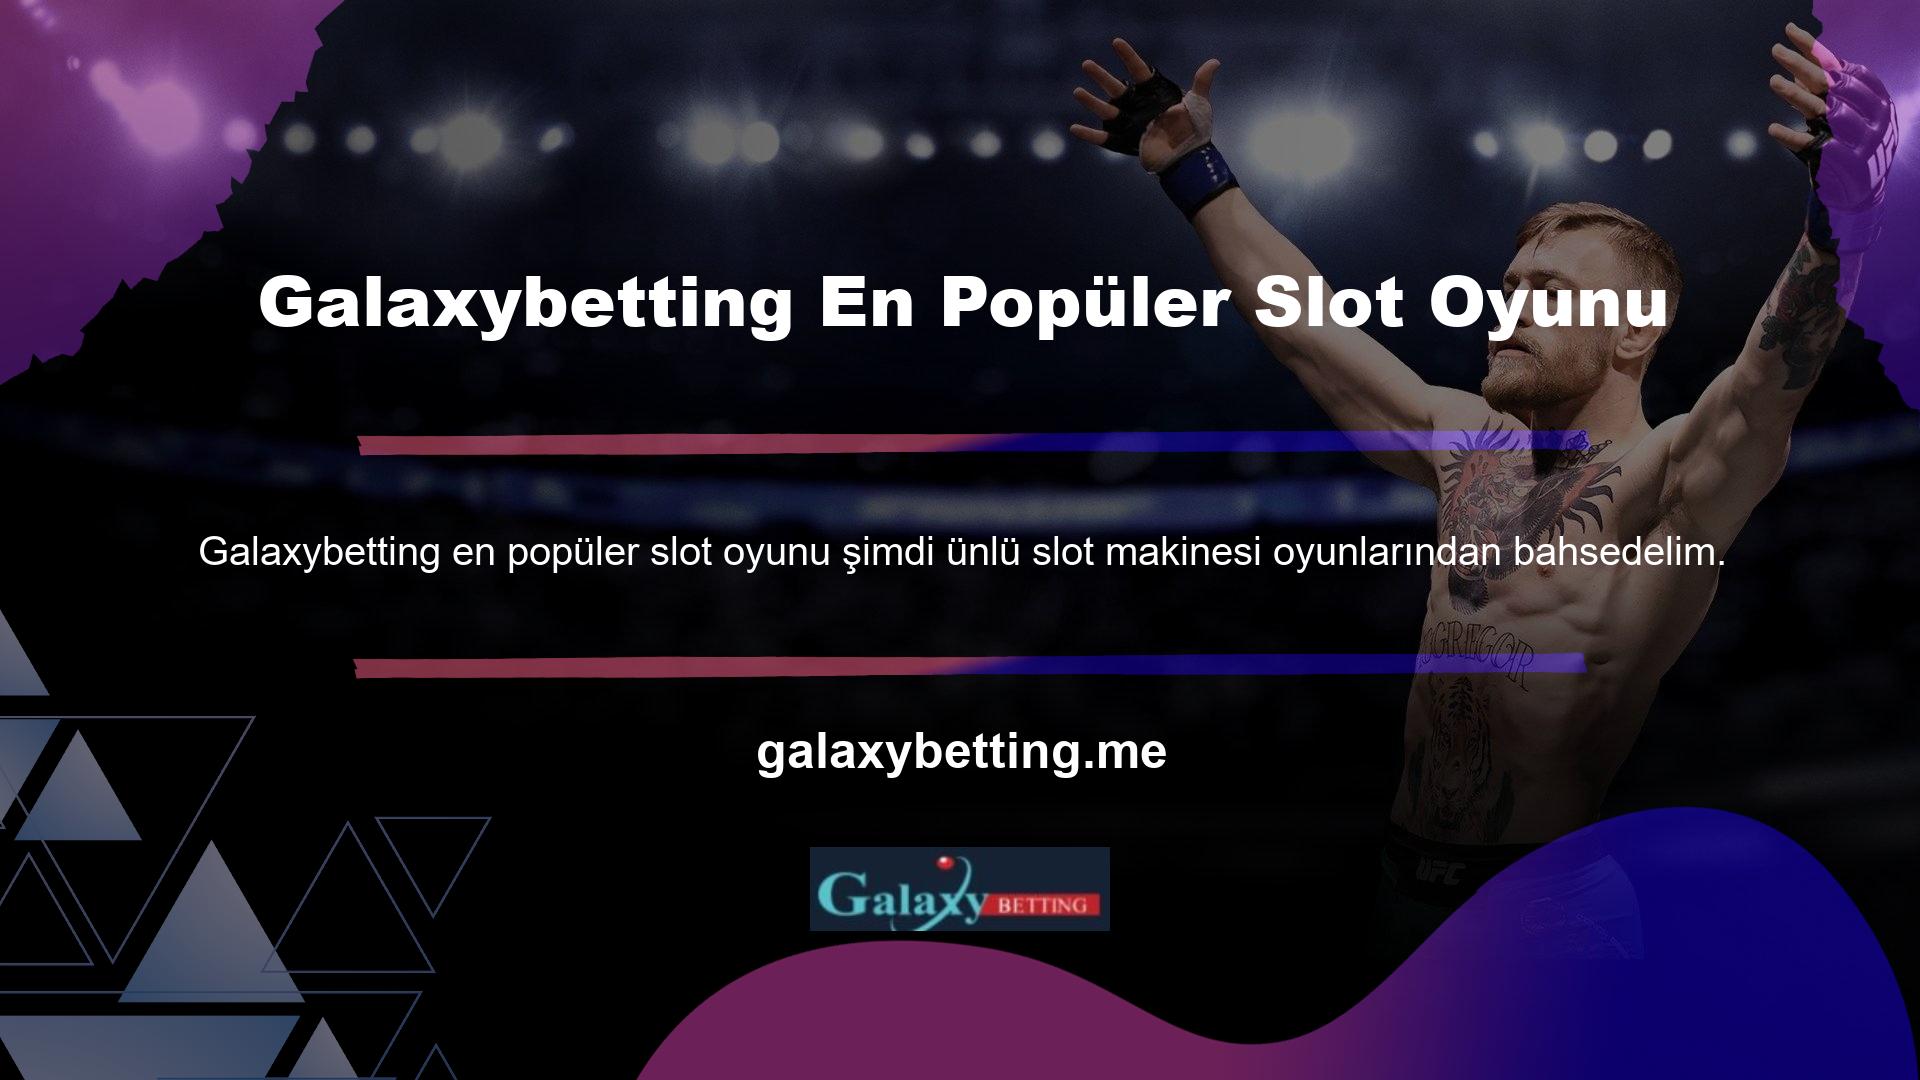 En popüler Galaxybetting slot oyunları arasından en çok oynanan oyun seçeneklerini tespit edip en çok para kazanarak kazanma şansı yakaladık